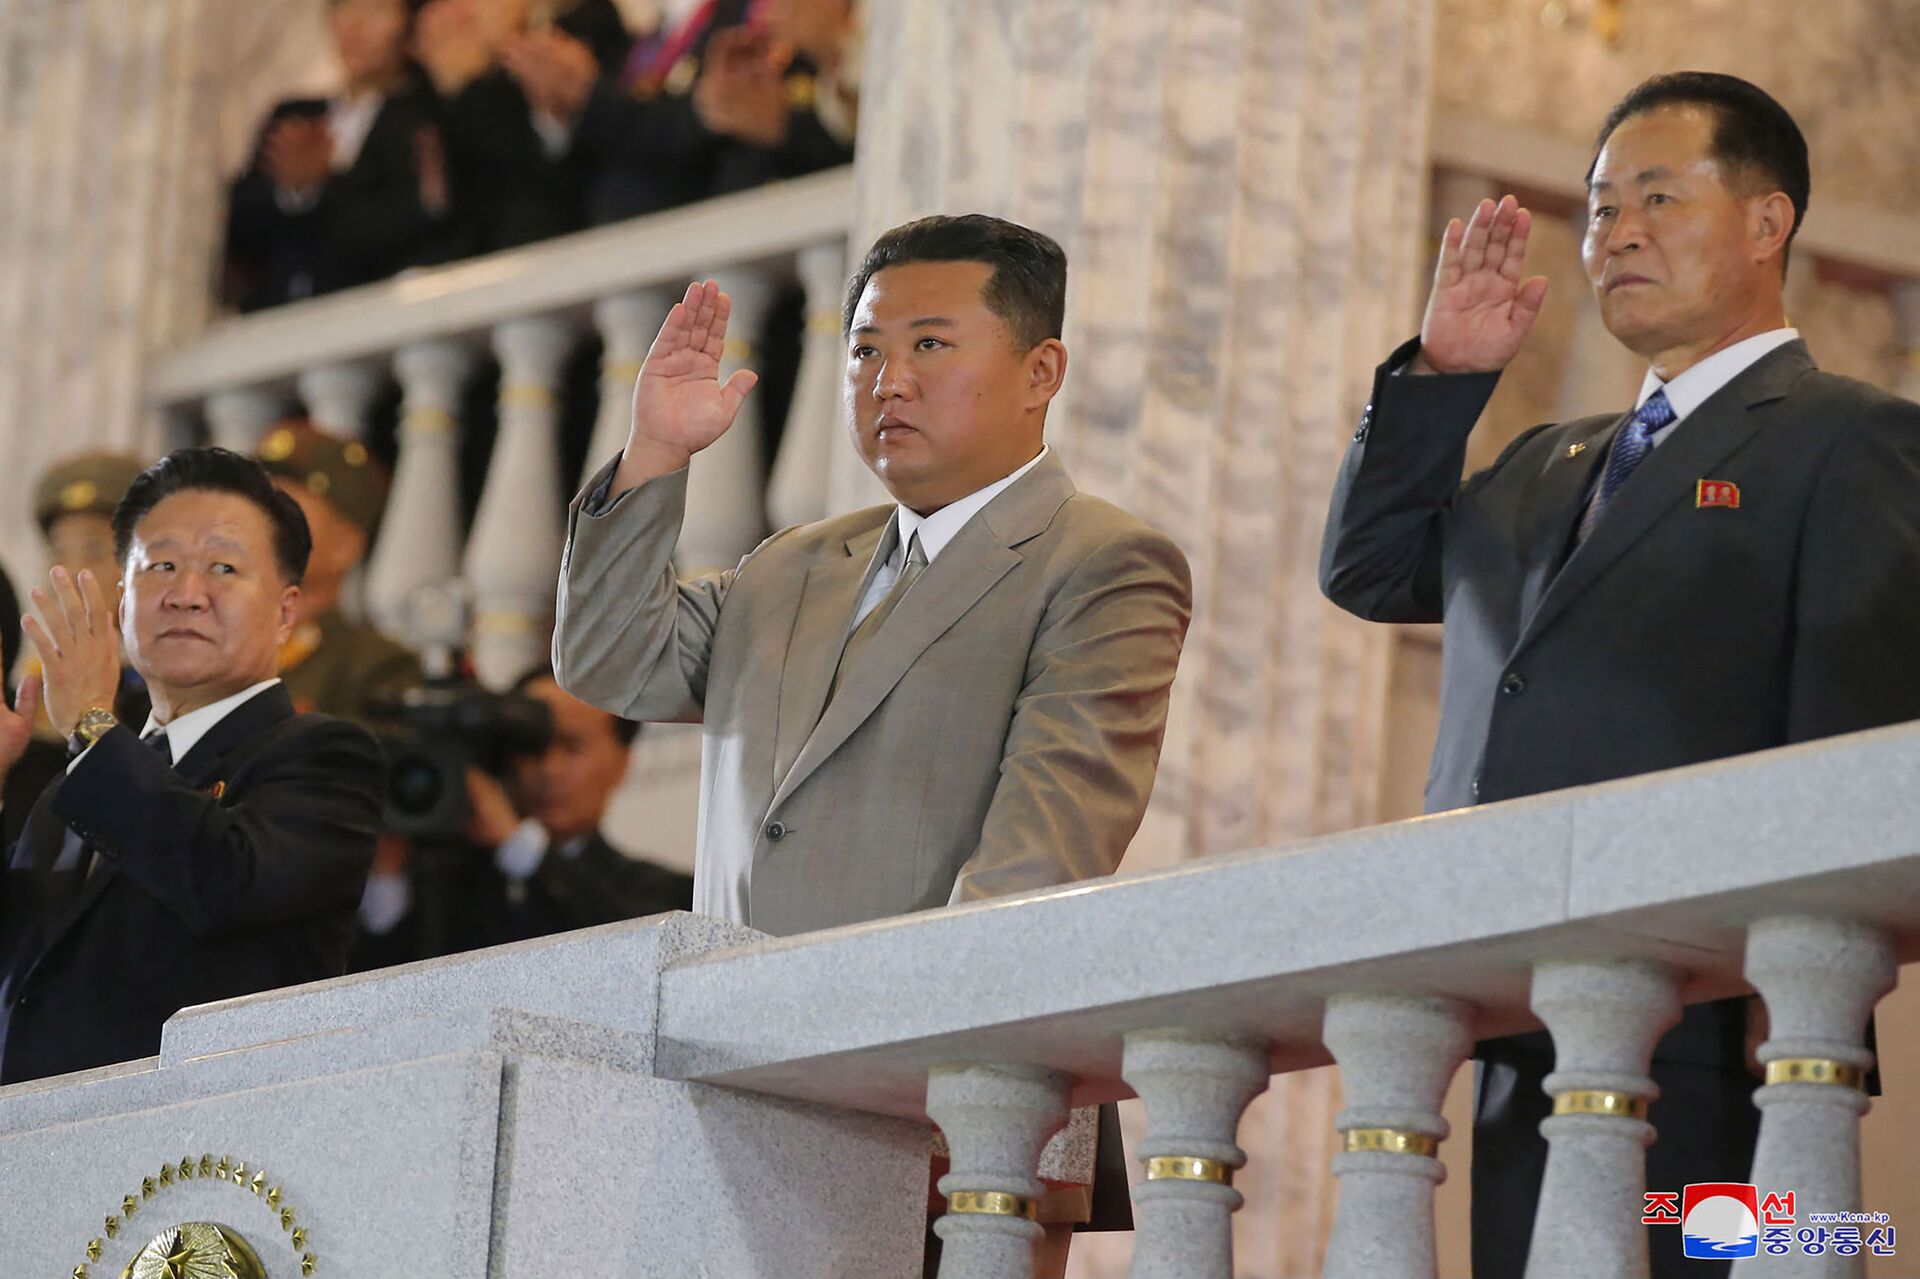 زعيم كوريا الشمالية كيم جونغ أون يشهد عرضا عسكريا بمناسبة ذكرى تأسيس الجمهورية - سبوتنيك عربي, 1920, 23.11.2021